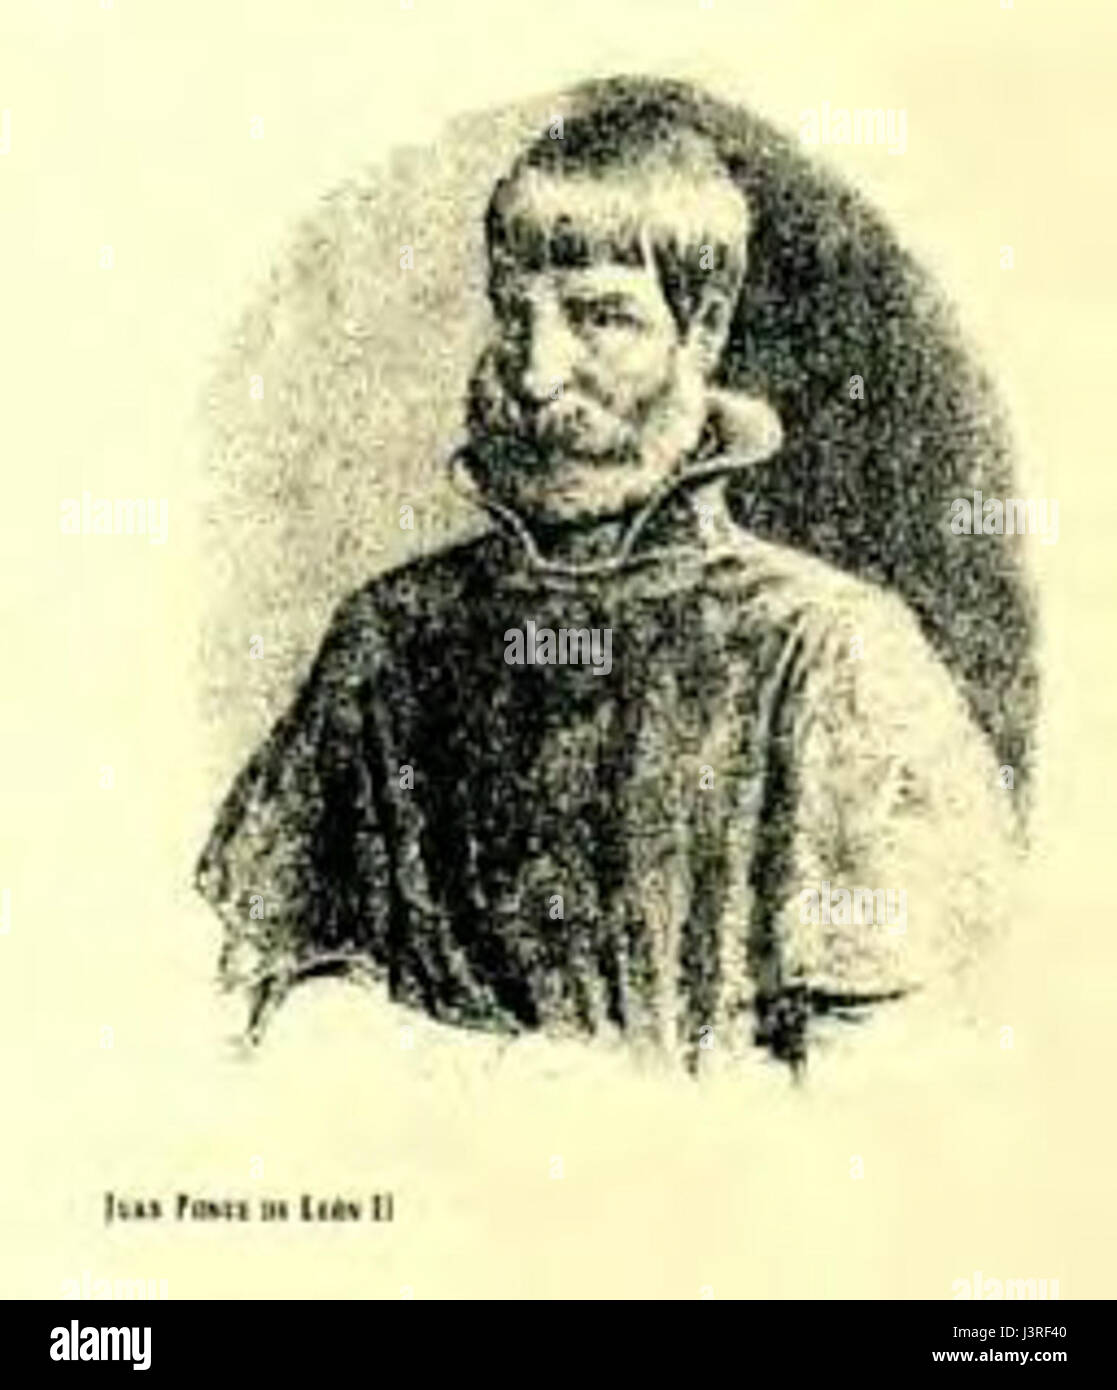 Juan Ponce de Leon II Stock Photo